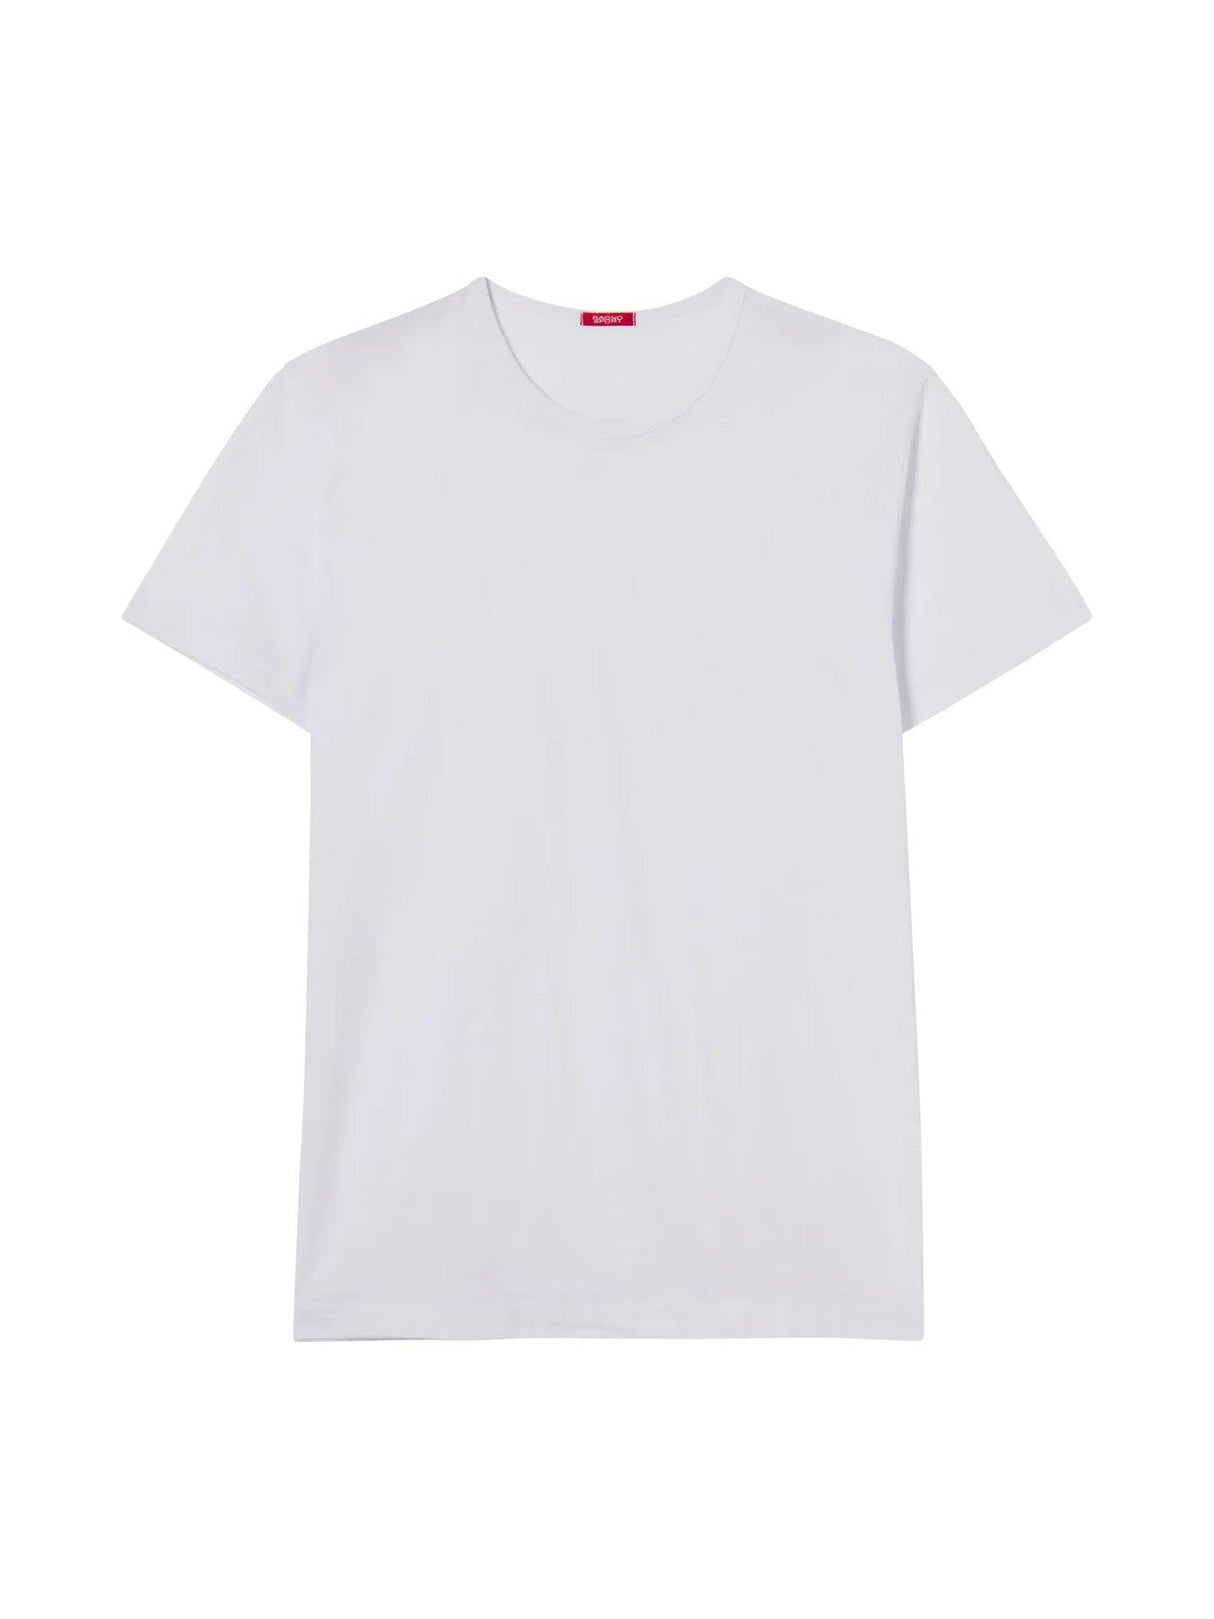 Ragno T-Shirt da Uomo in Cotone Girocollo Maniche Corte 019615 S100 - Passarelli Biancheria